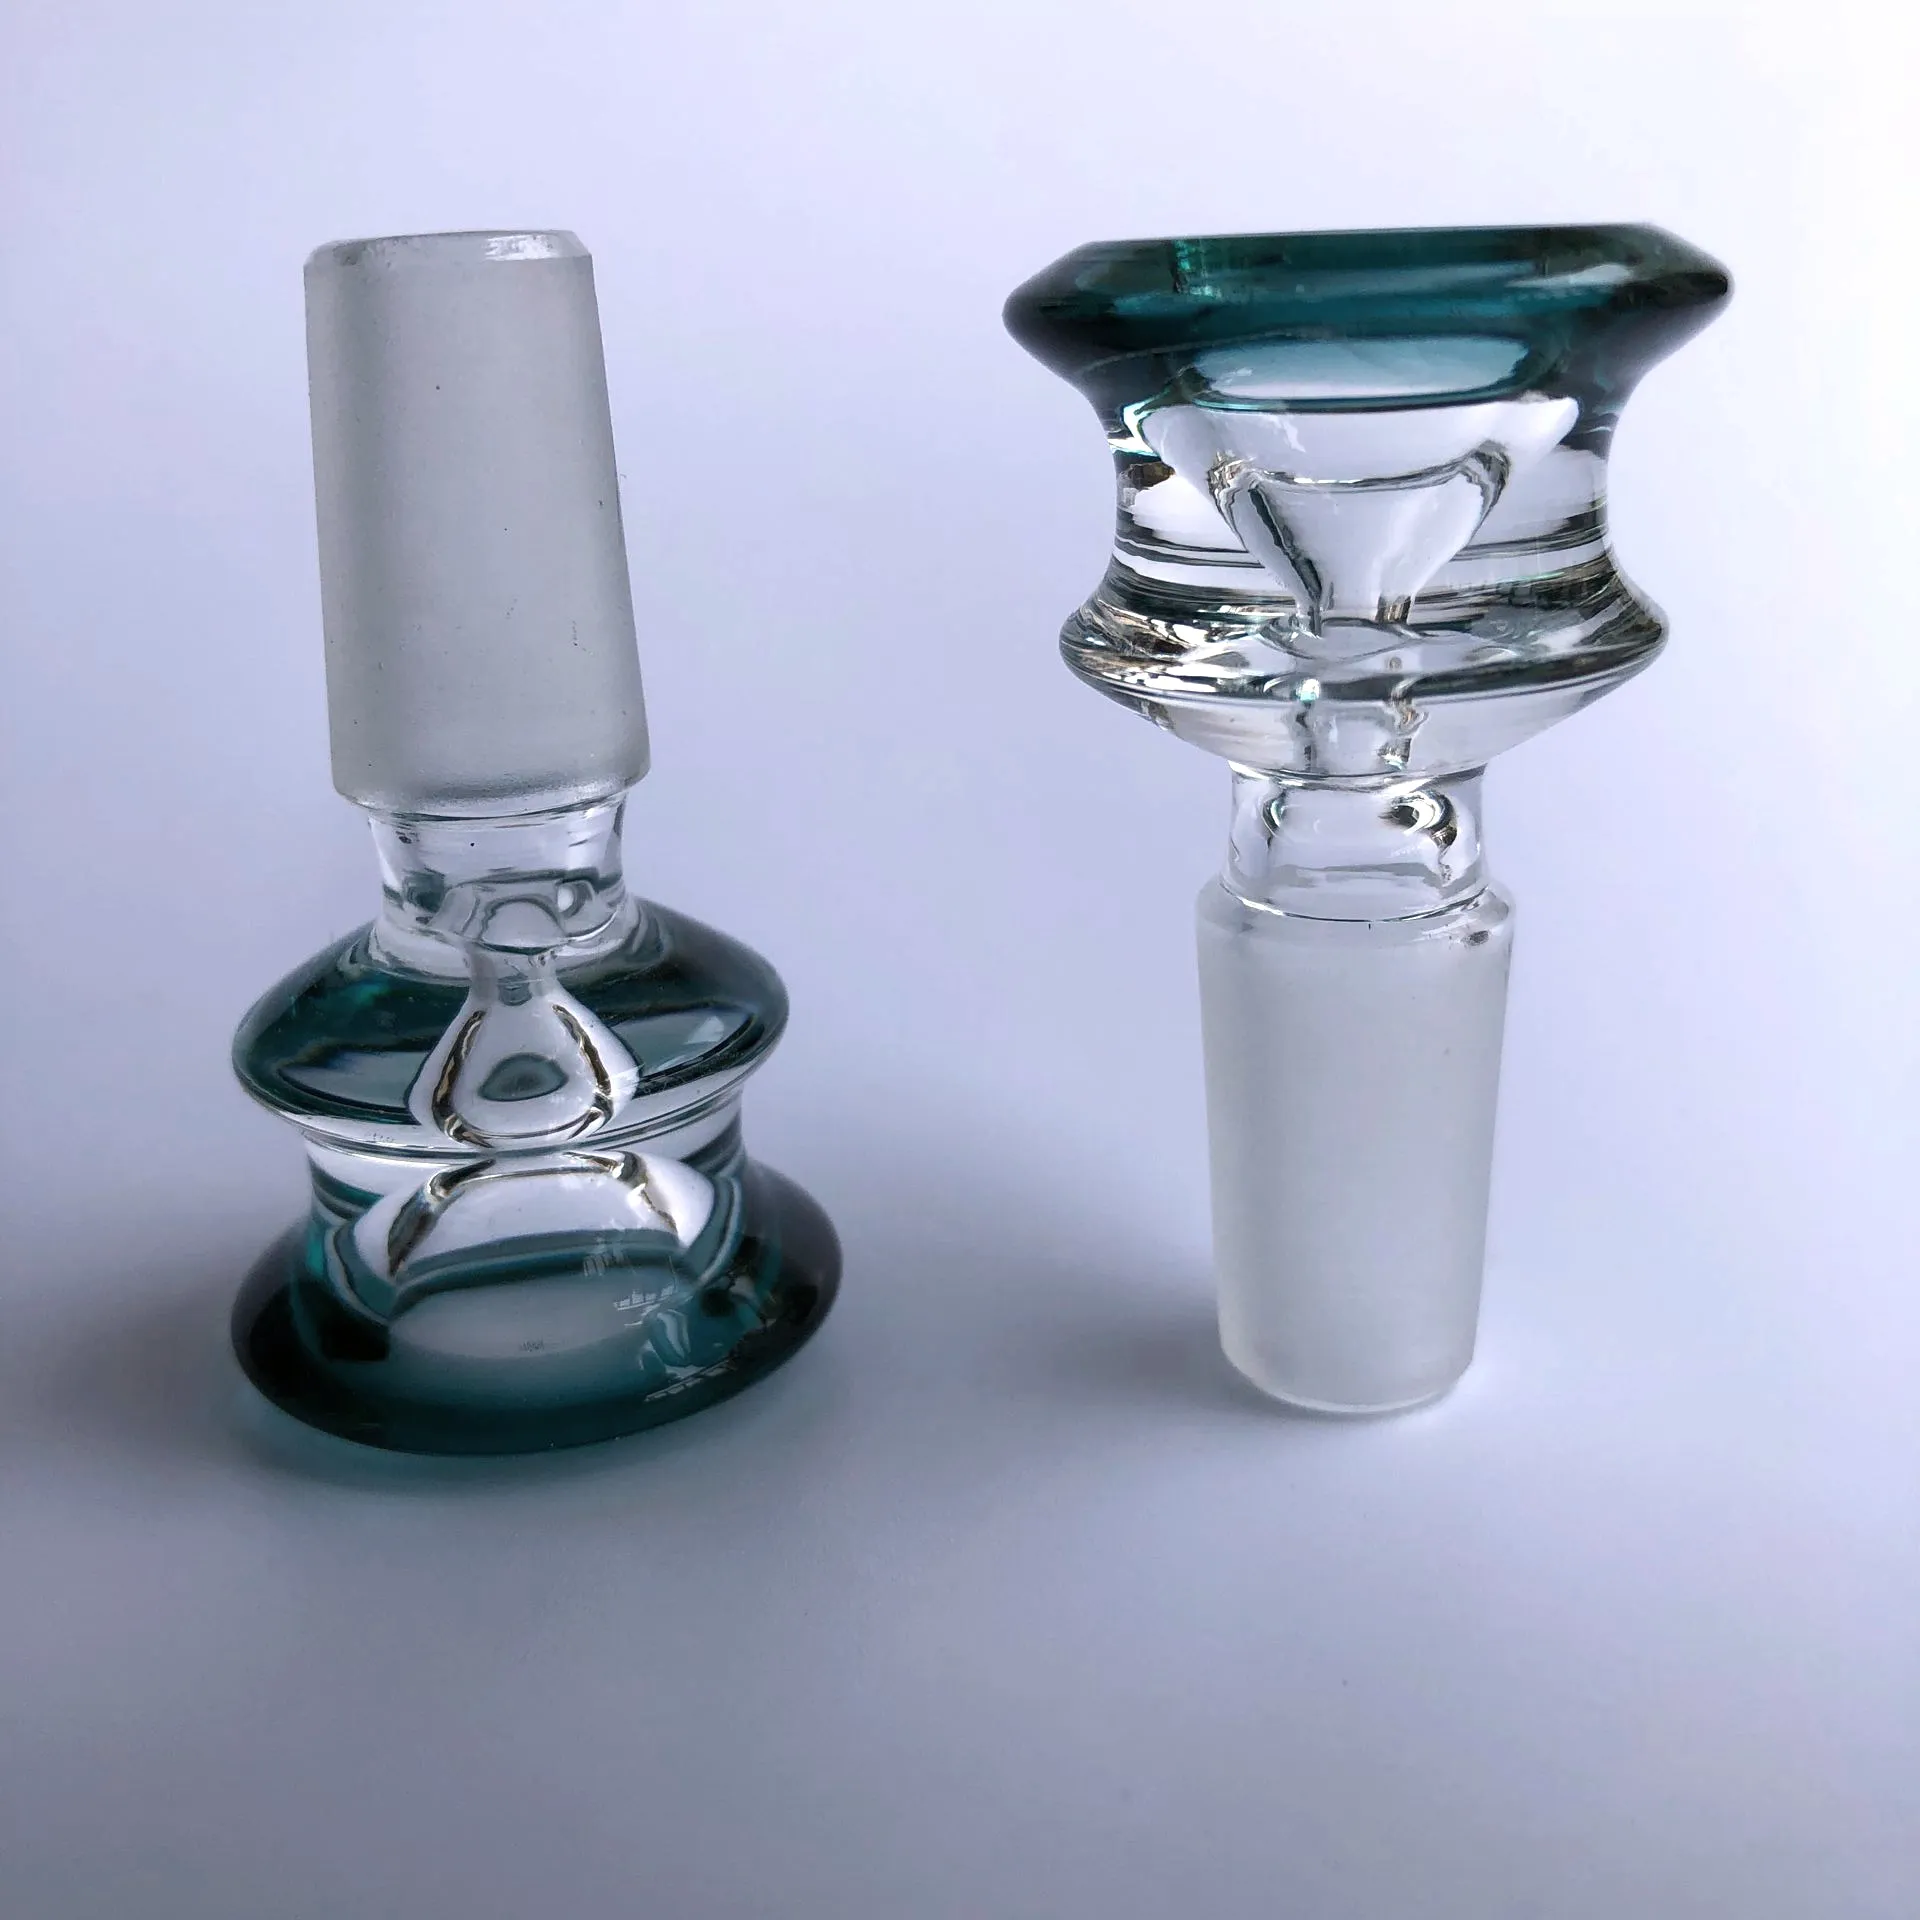 그릇 공동 크기 18.8mm / 14.4mm 흡연 최신 디자인 다이아몬드 모양의 슬라이드 꽃 유리 스크린 유리 물 파이프 그릇과 기억 만